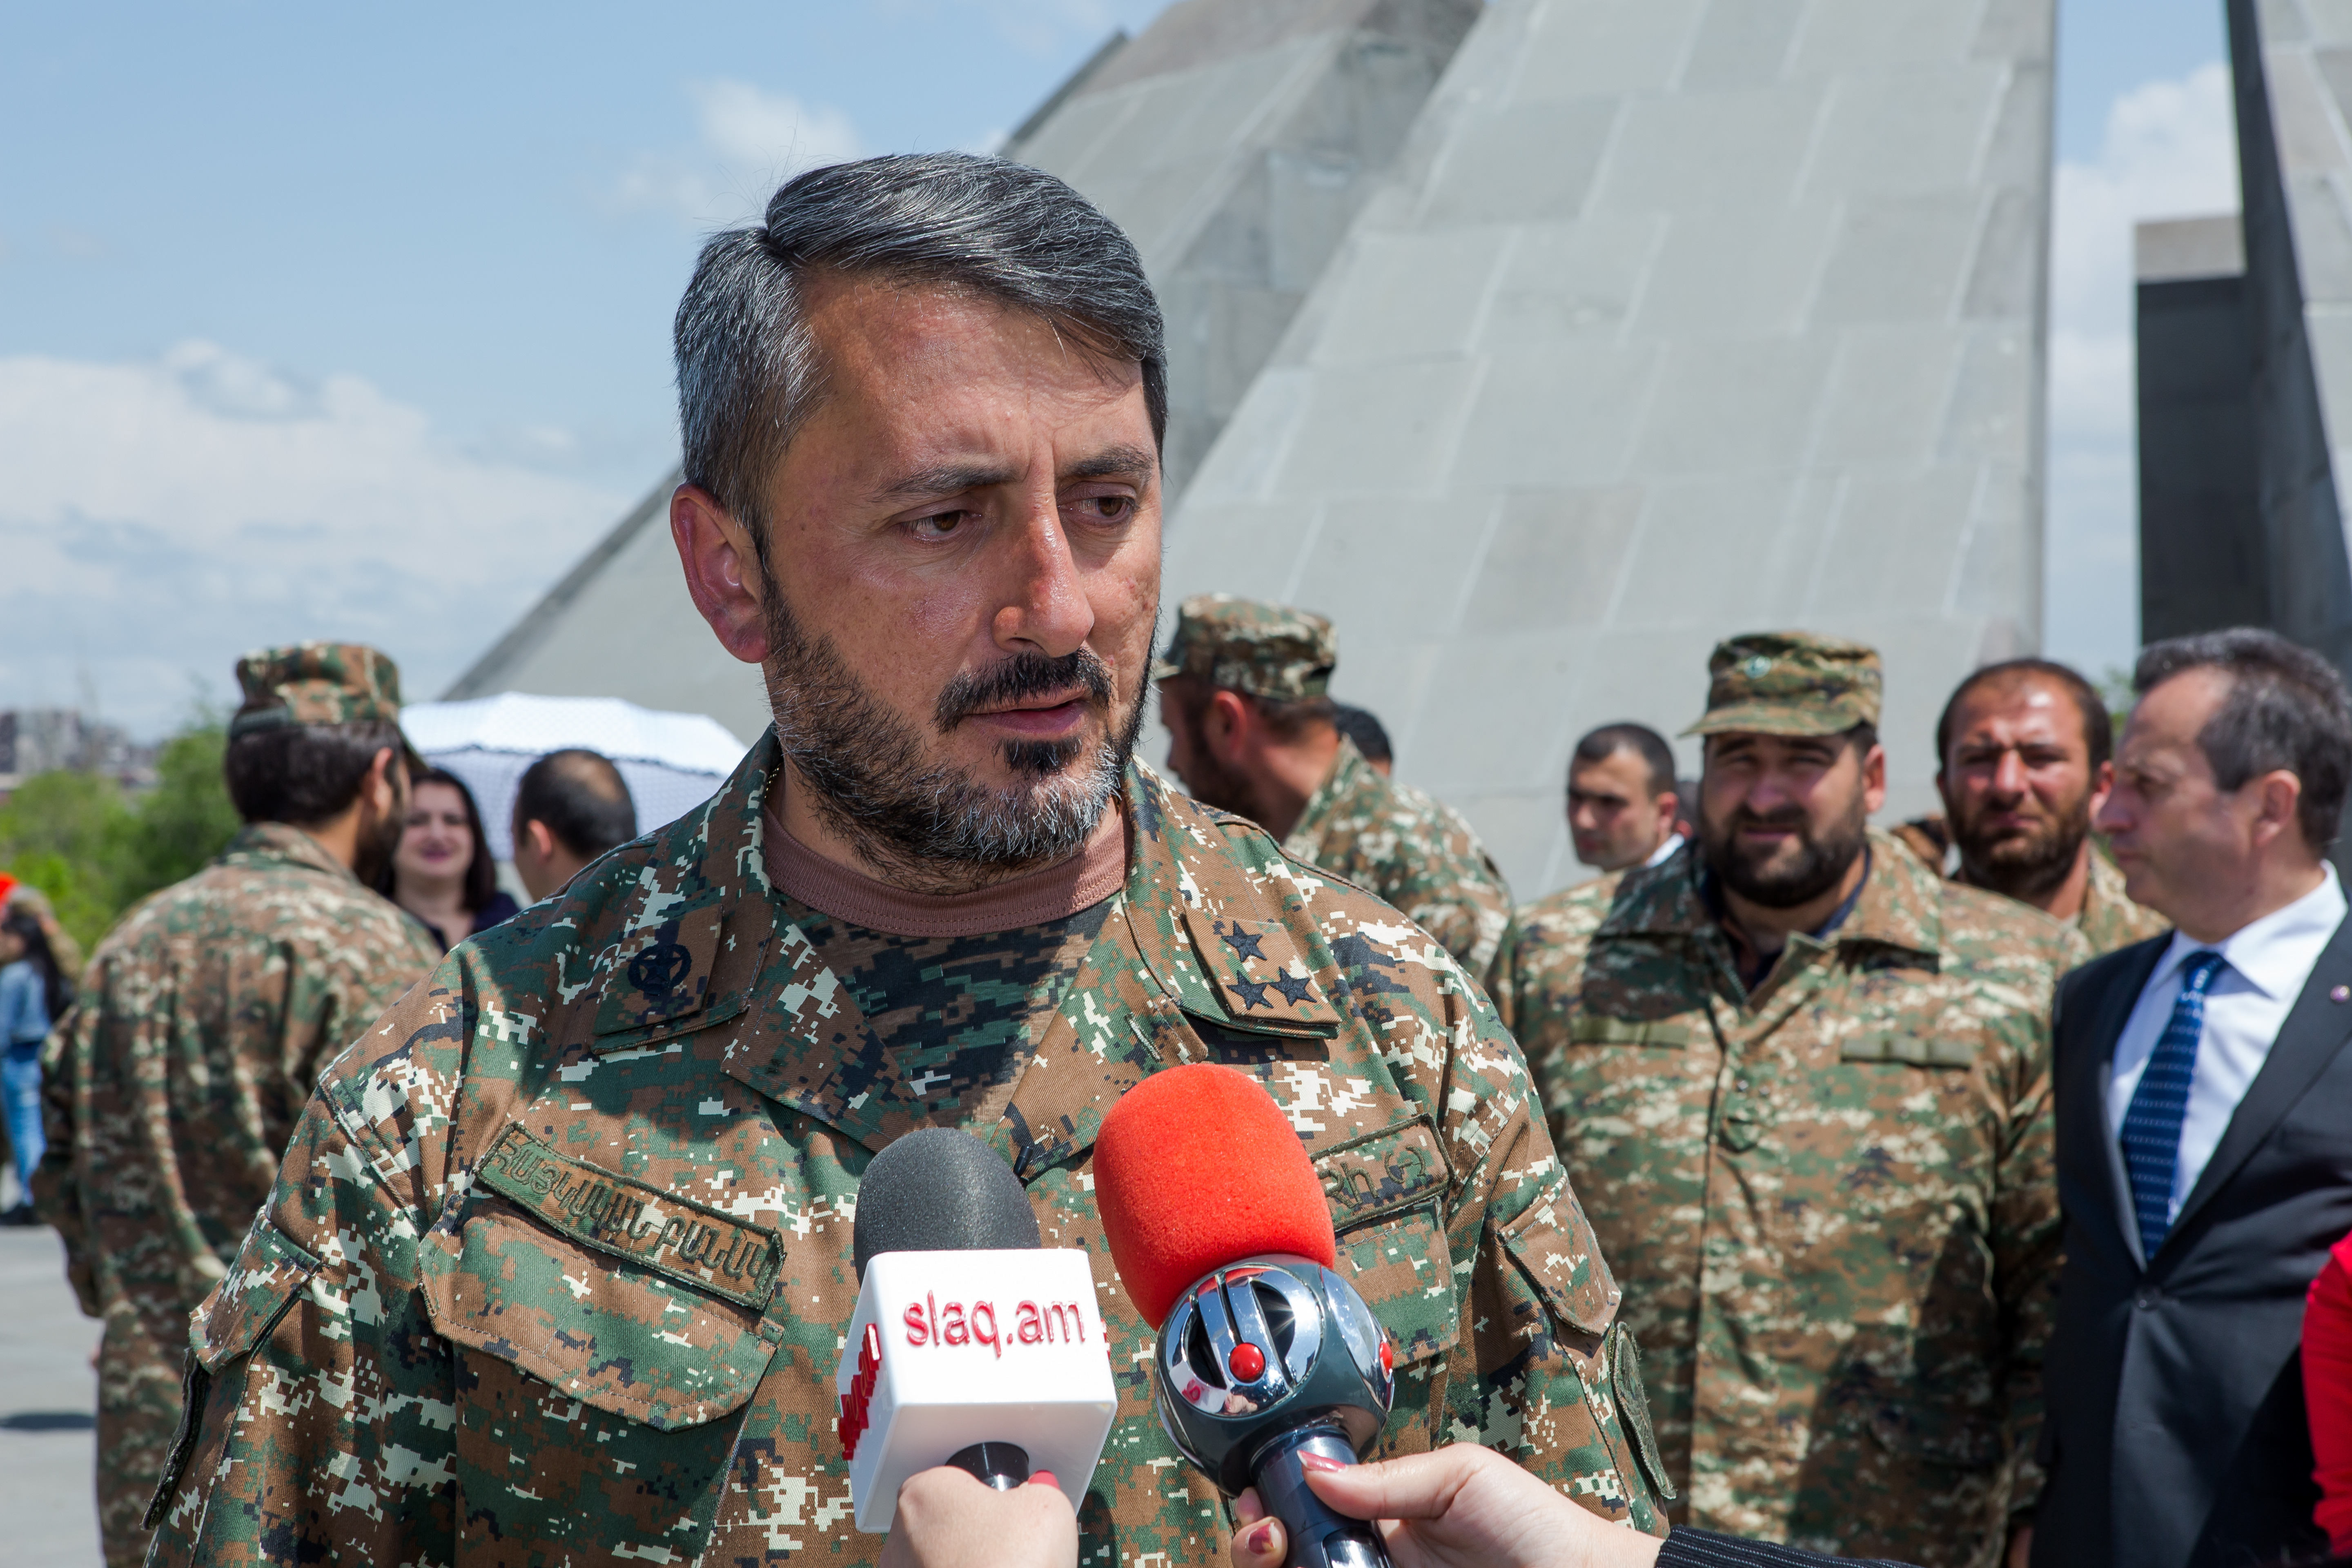 ՀՀ կառավարությունը պետք է չեղյալ հայտարարի ՆԱՏՕ-ի շաբաթը Երևանում. Ասրյան